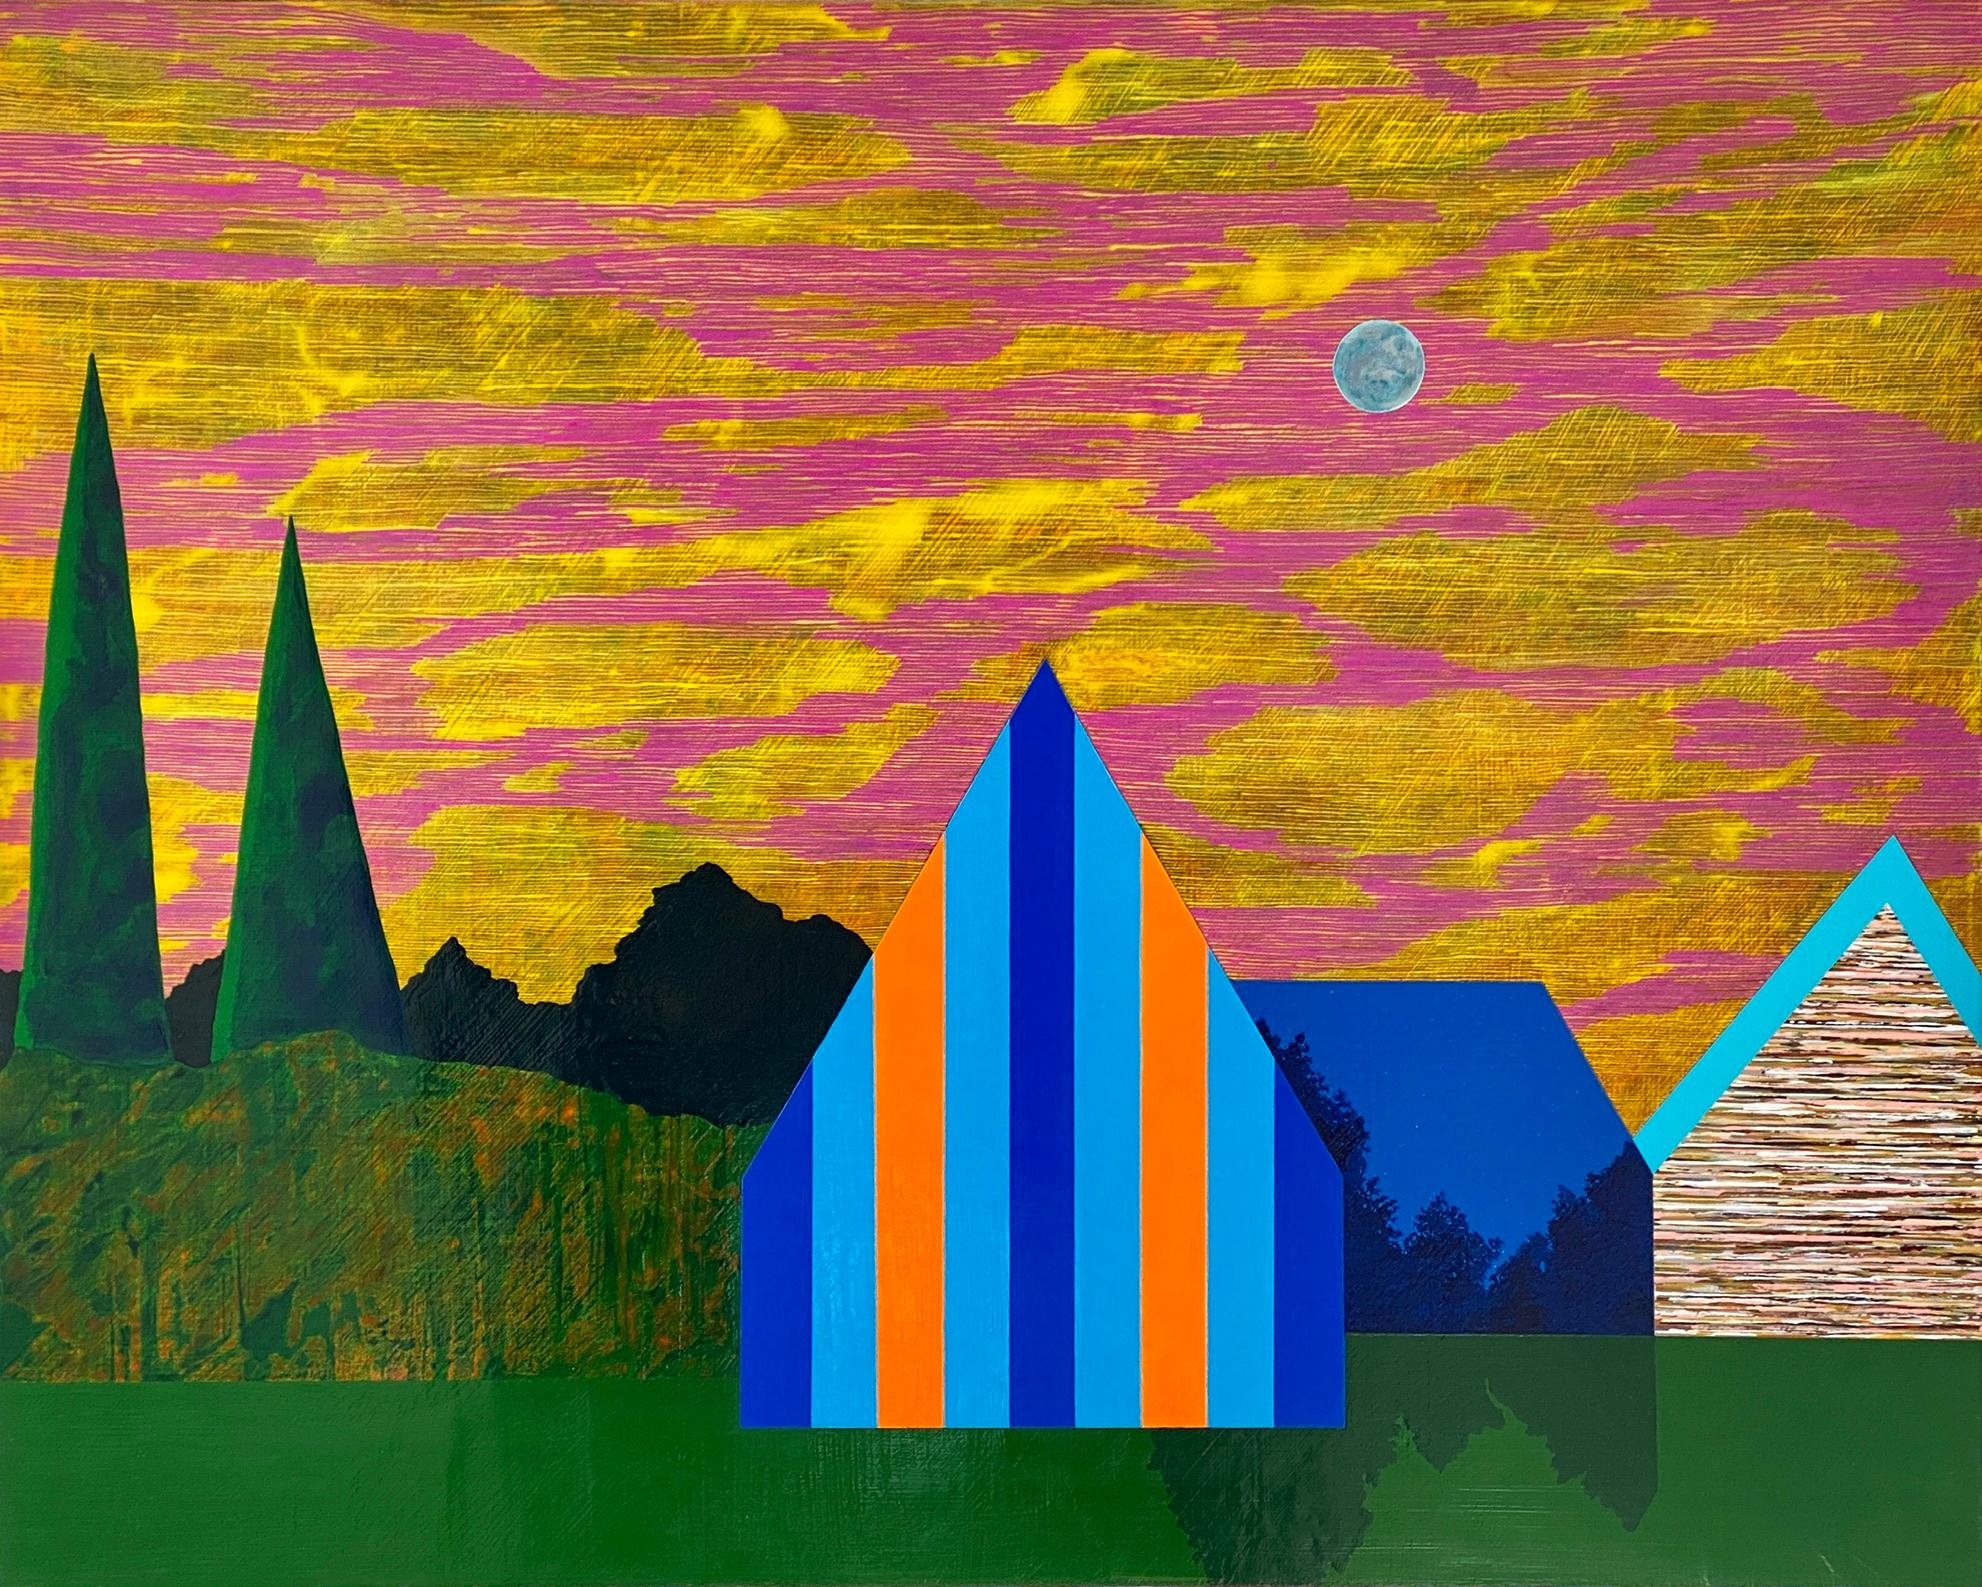 James Isherwood Landscape Painting - Gathering Sky, blue and orange house against sunset, painting on panel